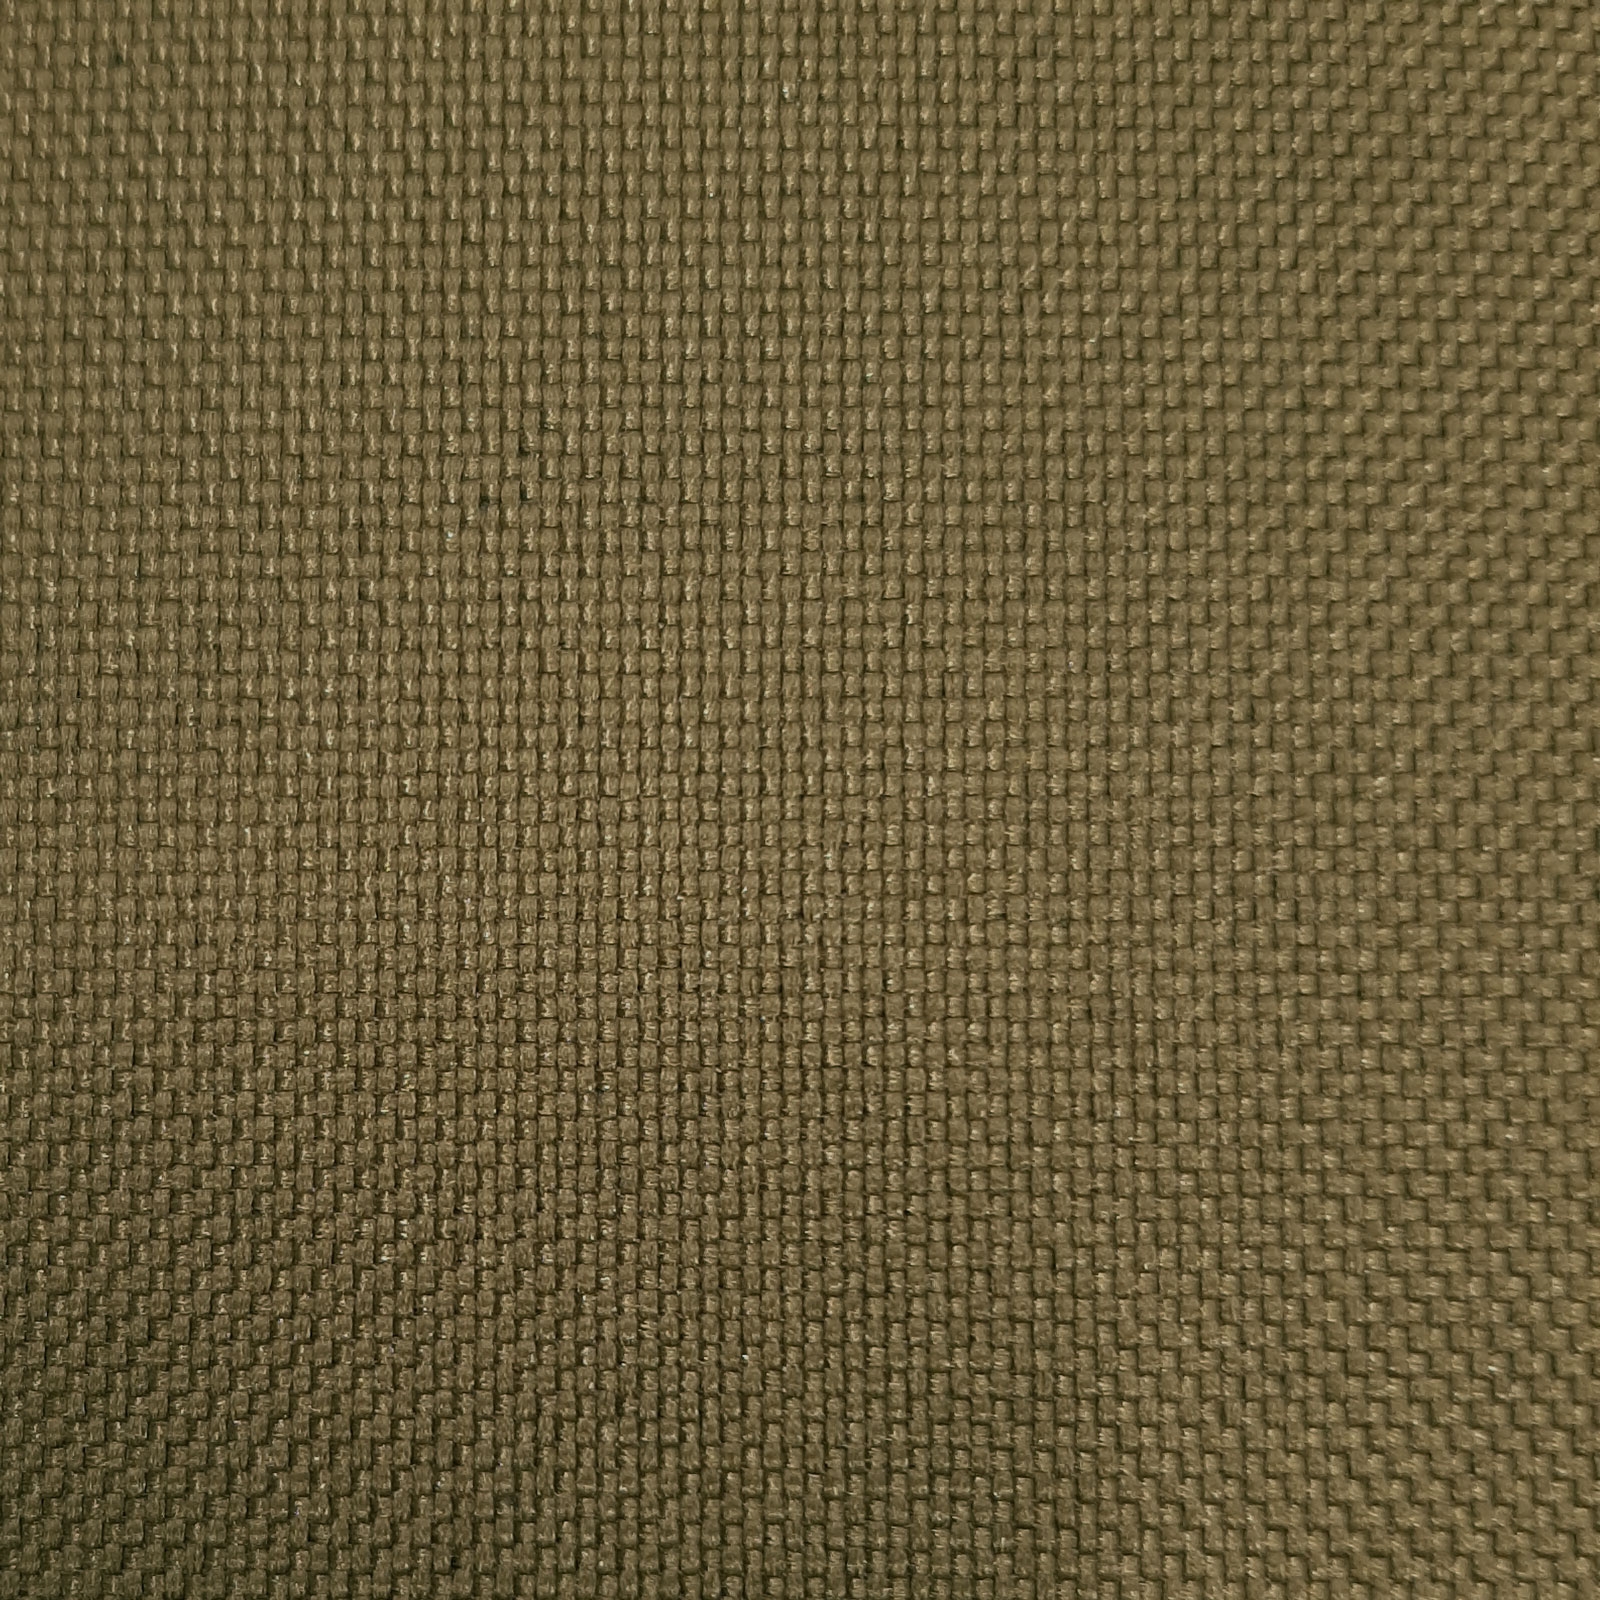 Ballistic nylon - 560 dtex - Khaki oliven